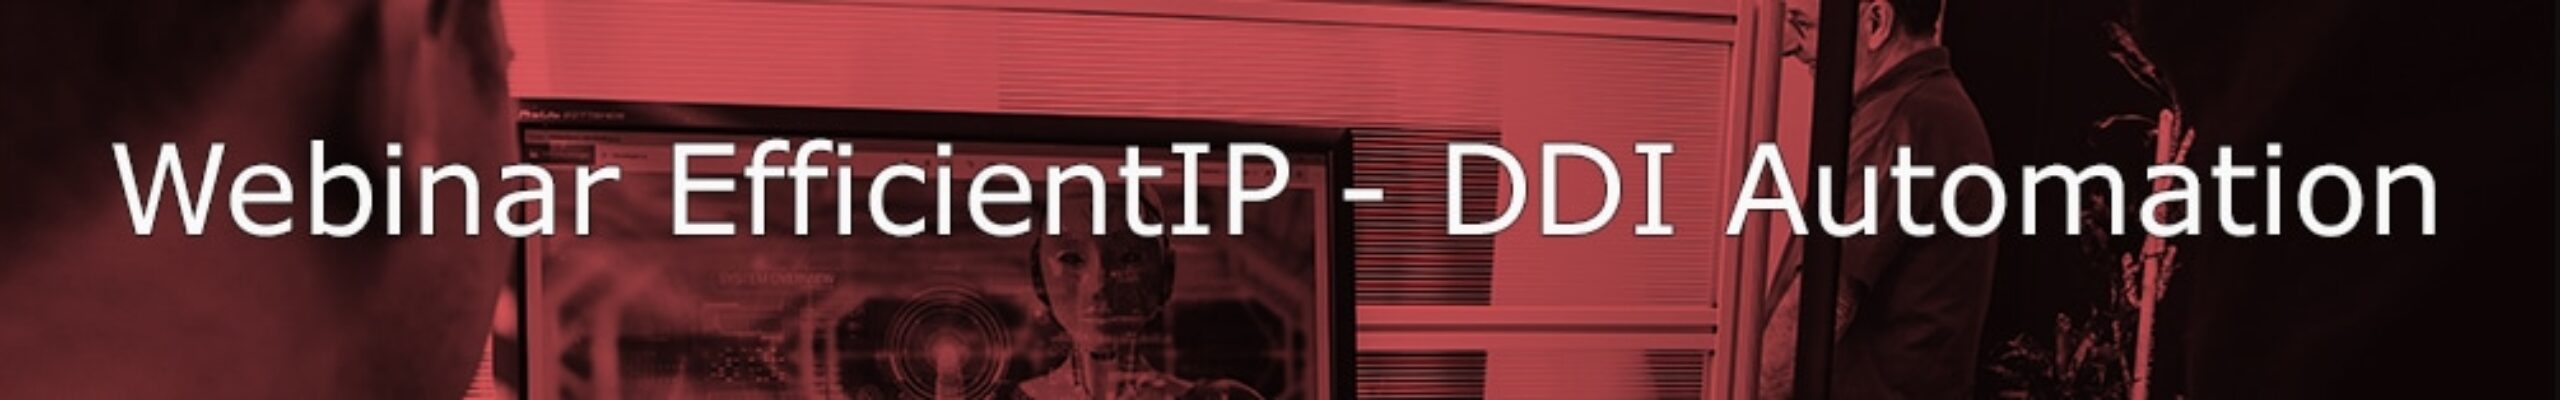 webinar-EIP-DDI-automation_banner_final